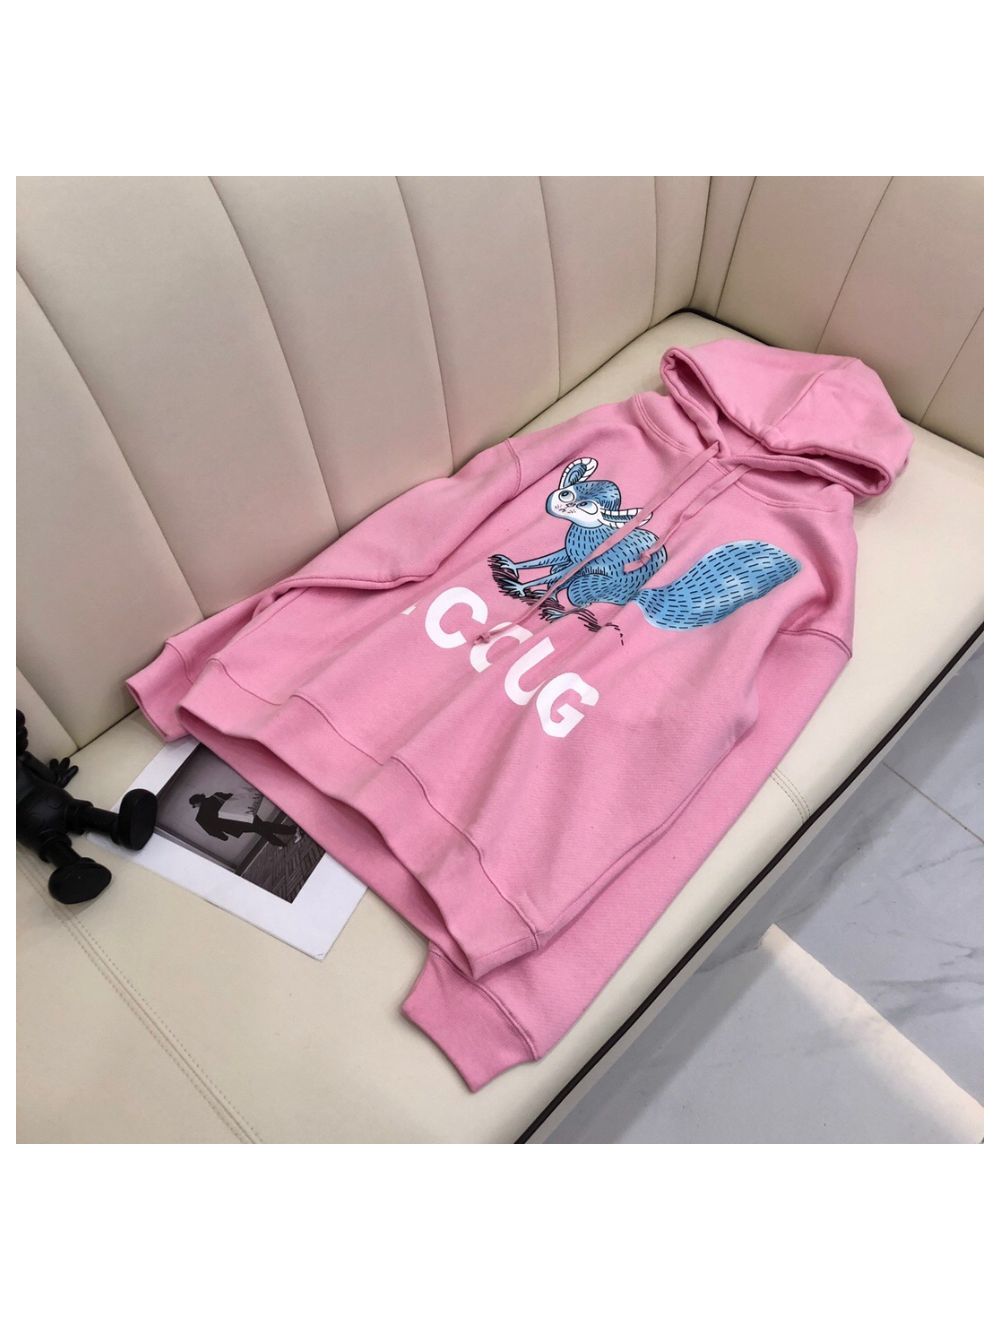 Gucci Hoodie Unisex - Sweatshirt with ICCUG animal print by Freya 